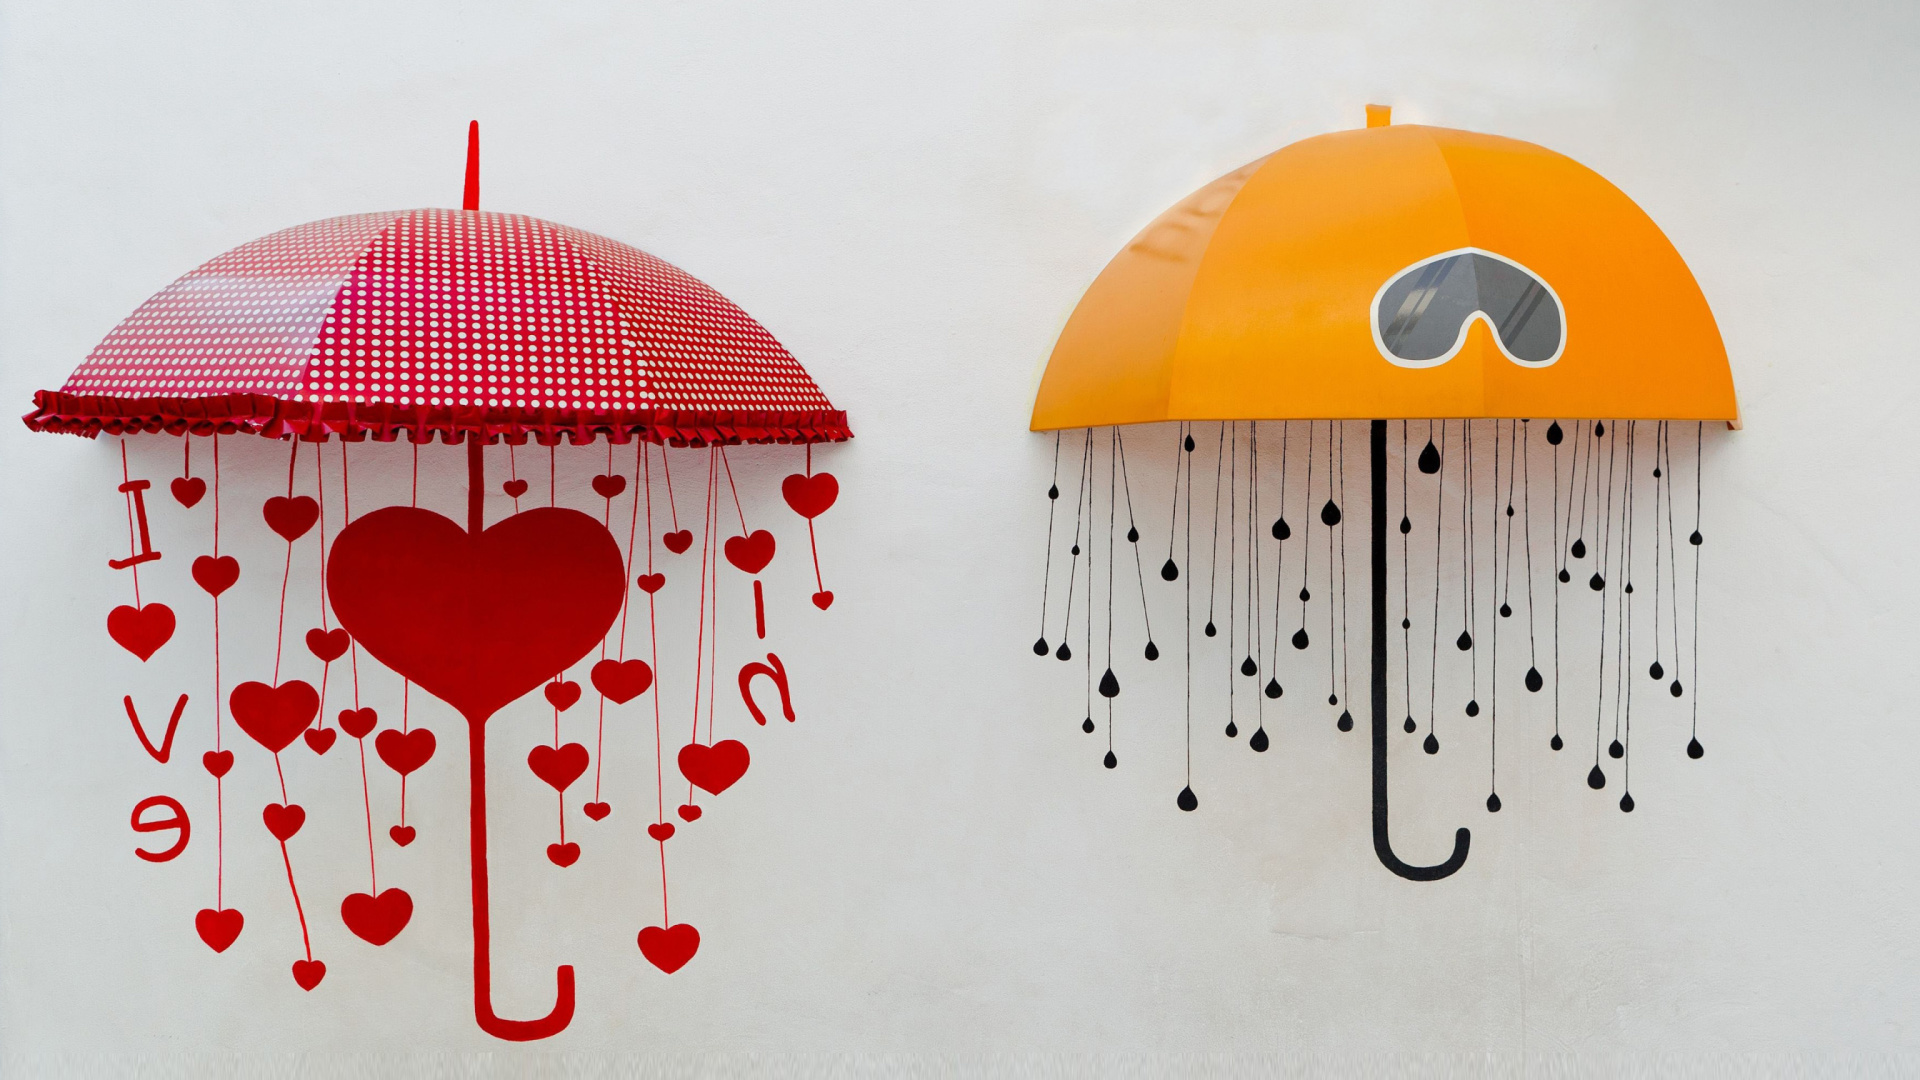 Das Two umbrellas Wallpaper 1920x1080